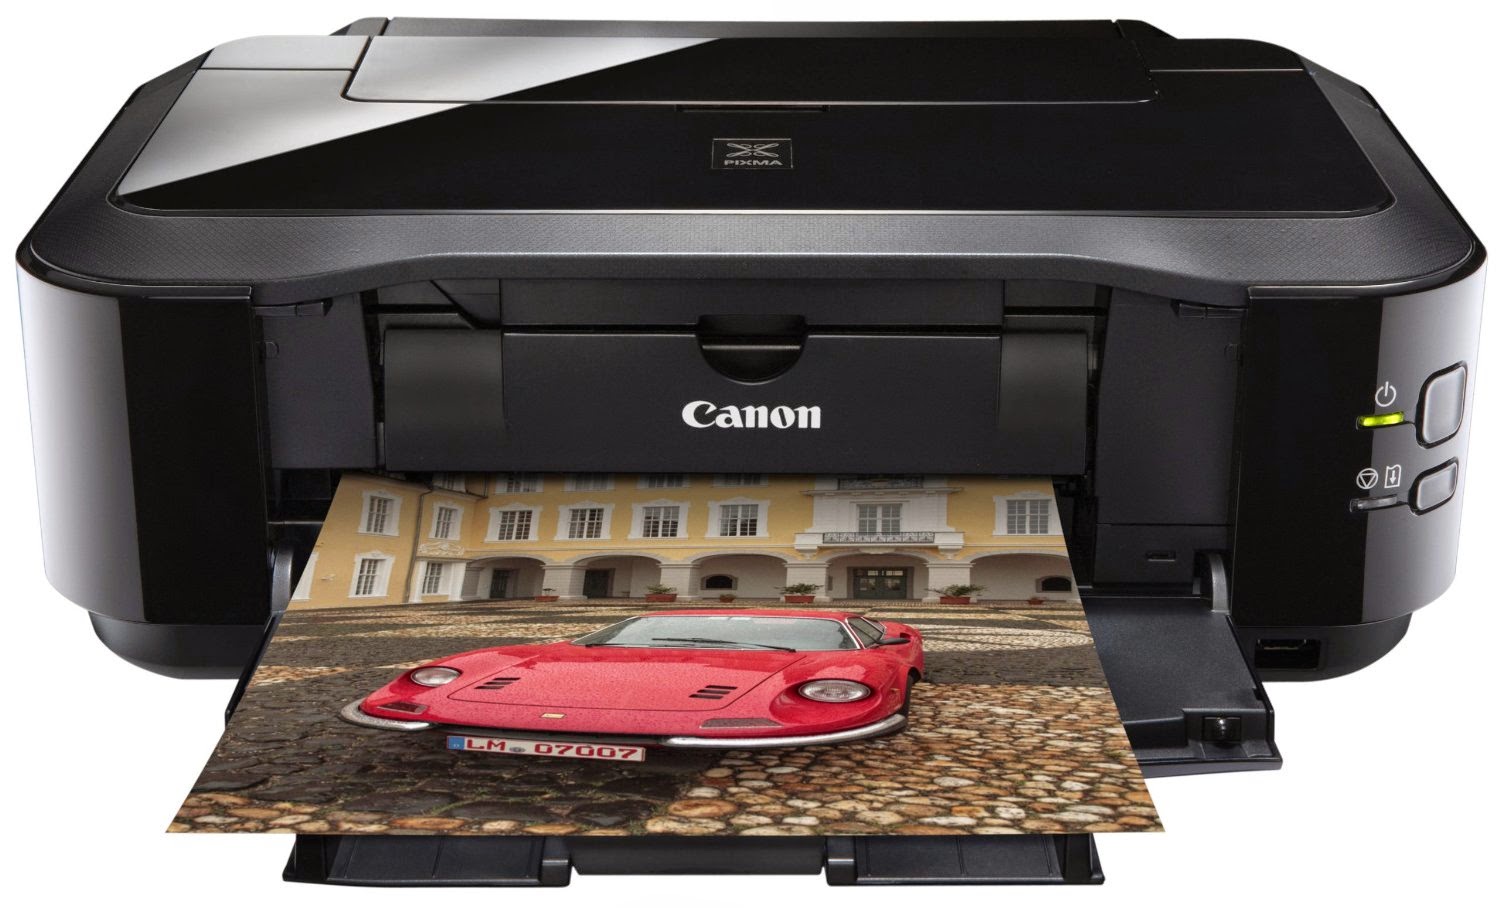 Принтер canon pixma ip4700 скачать бесплатно драйвера